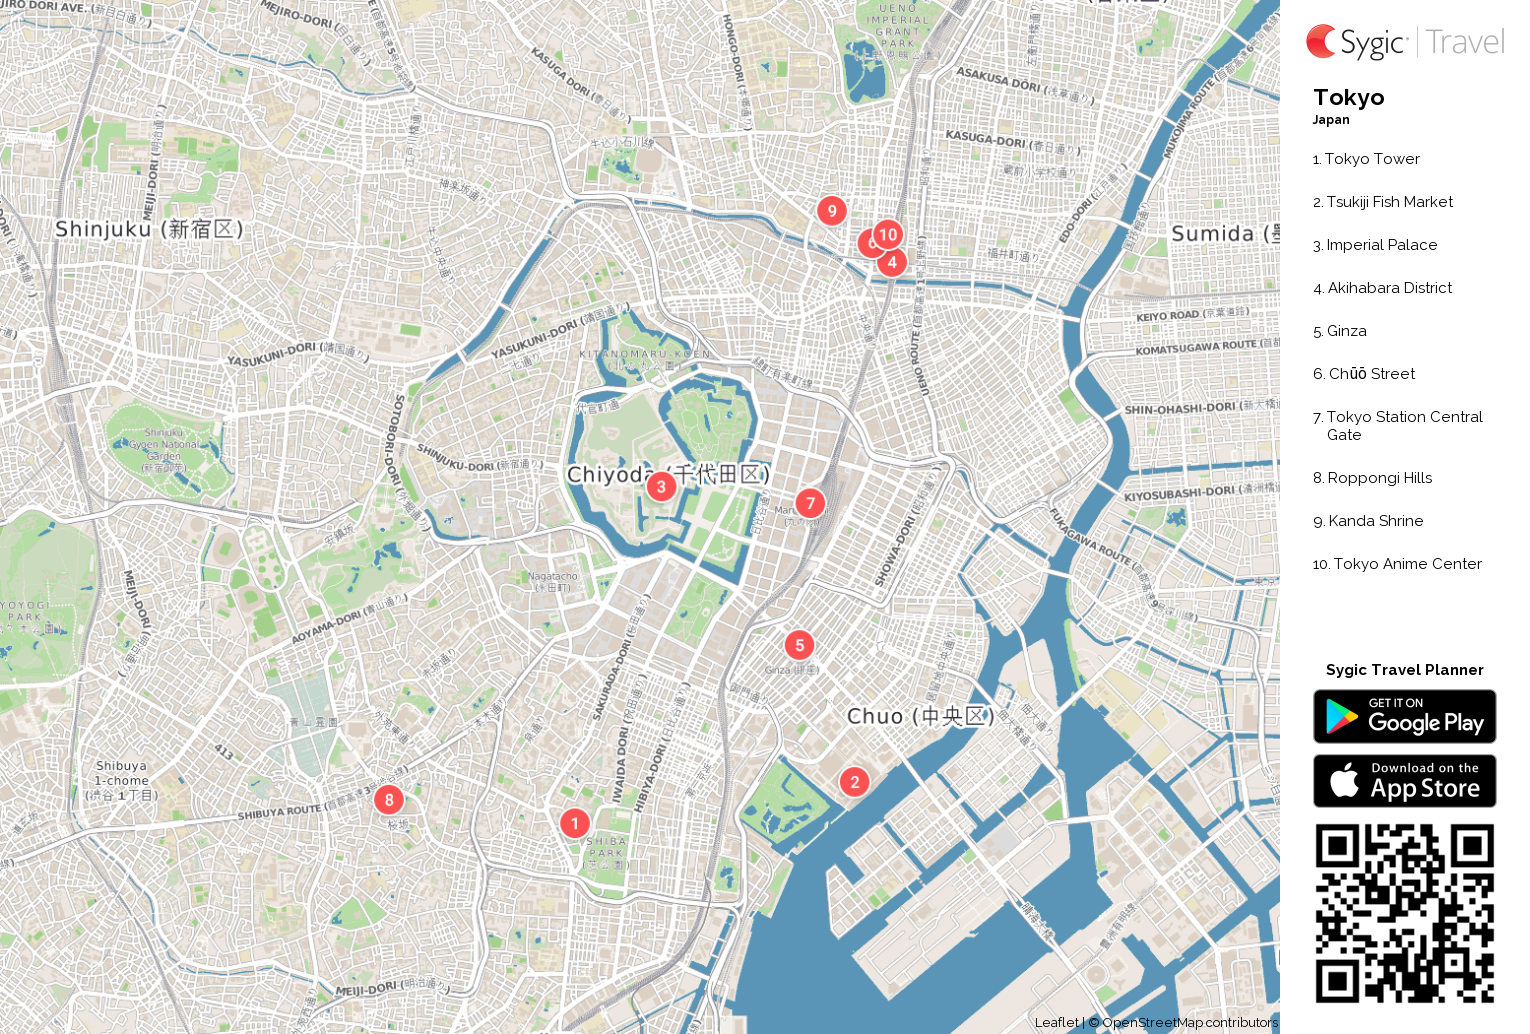 Tokyo Printable Tourist Map | Sygic Travel